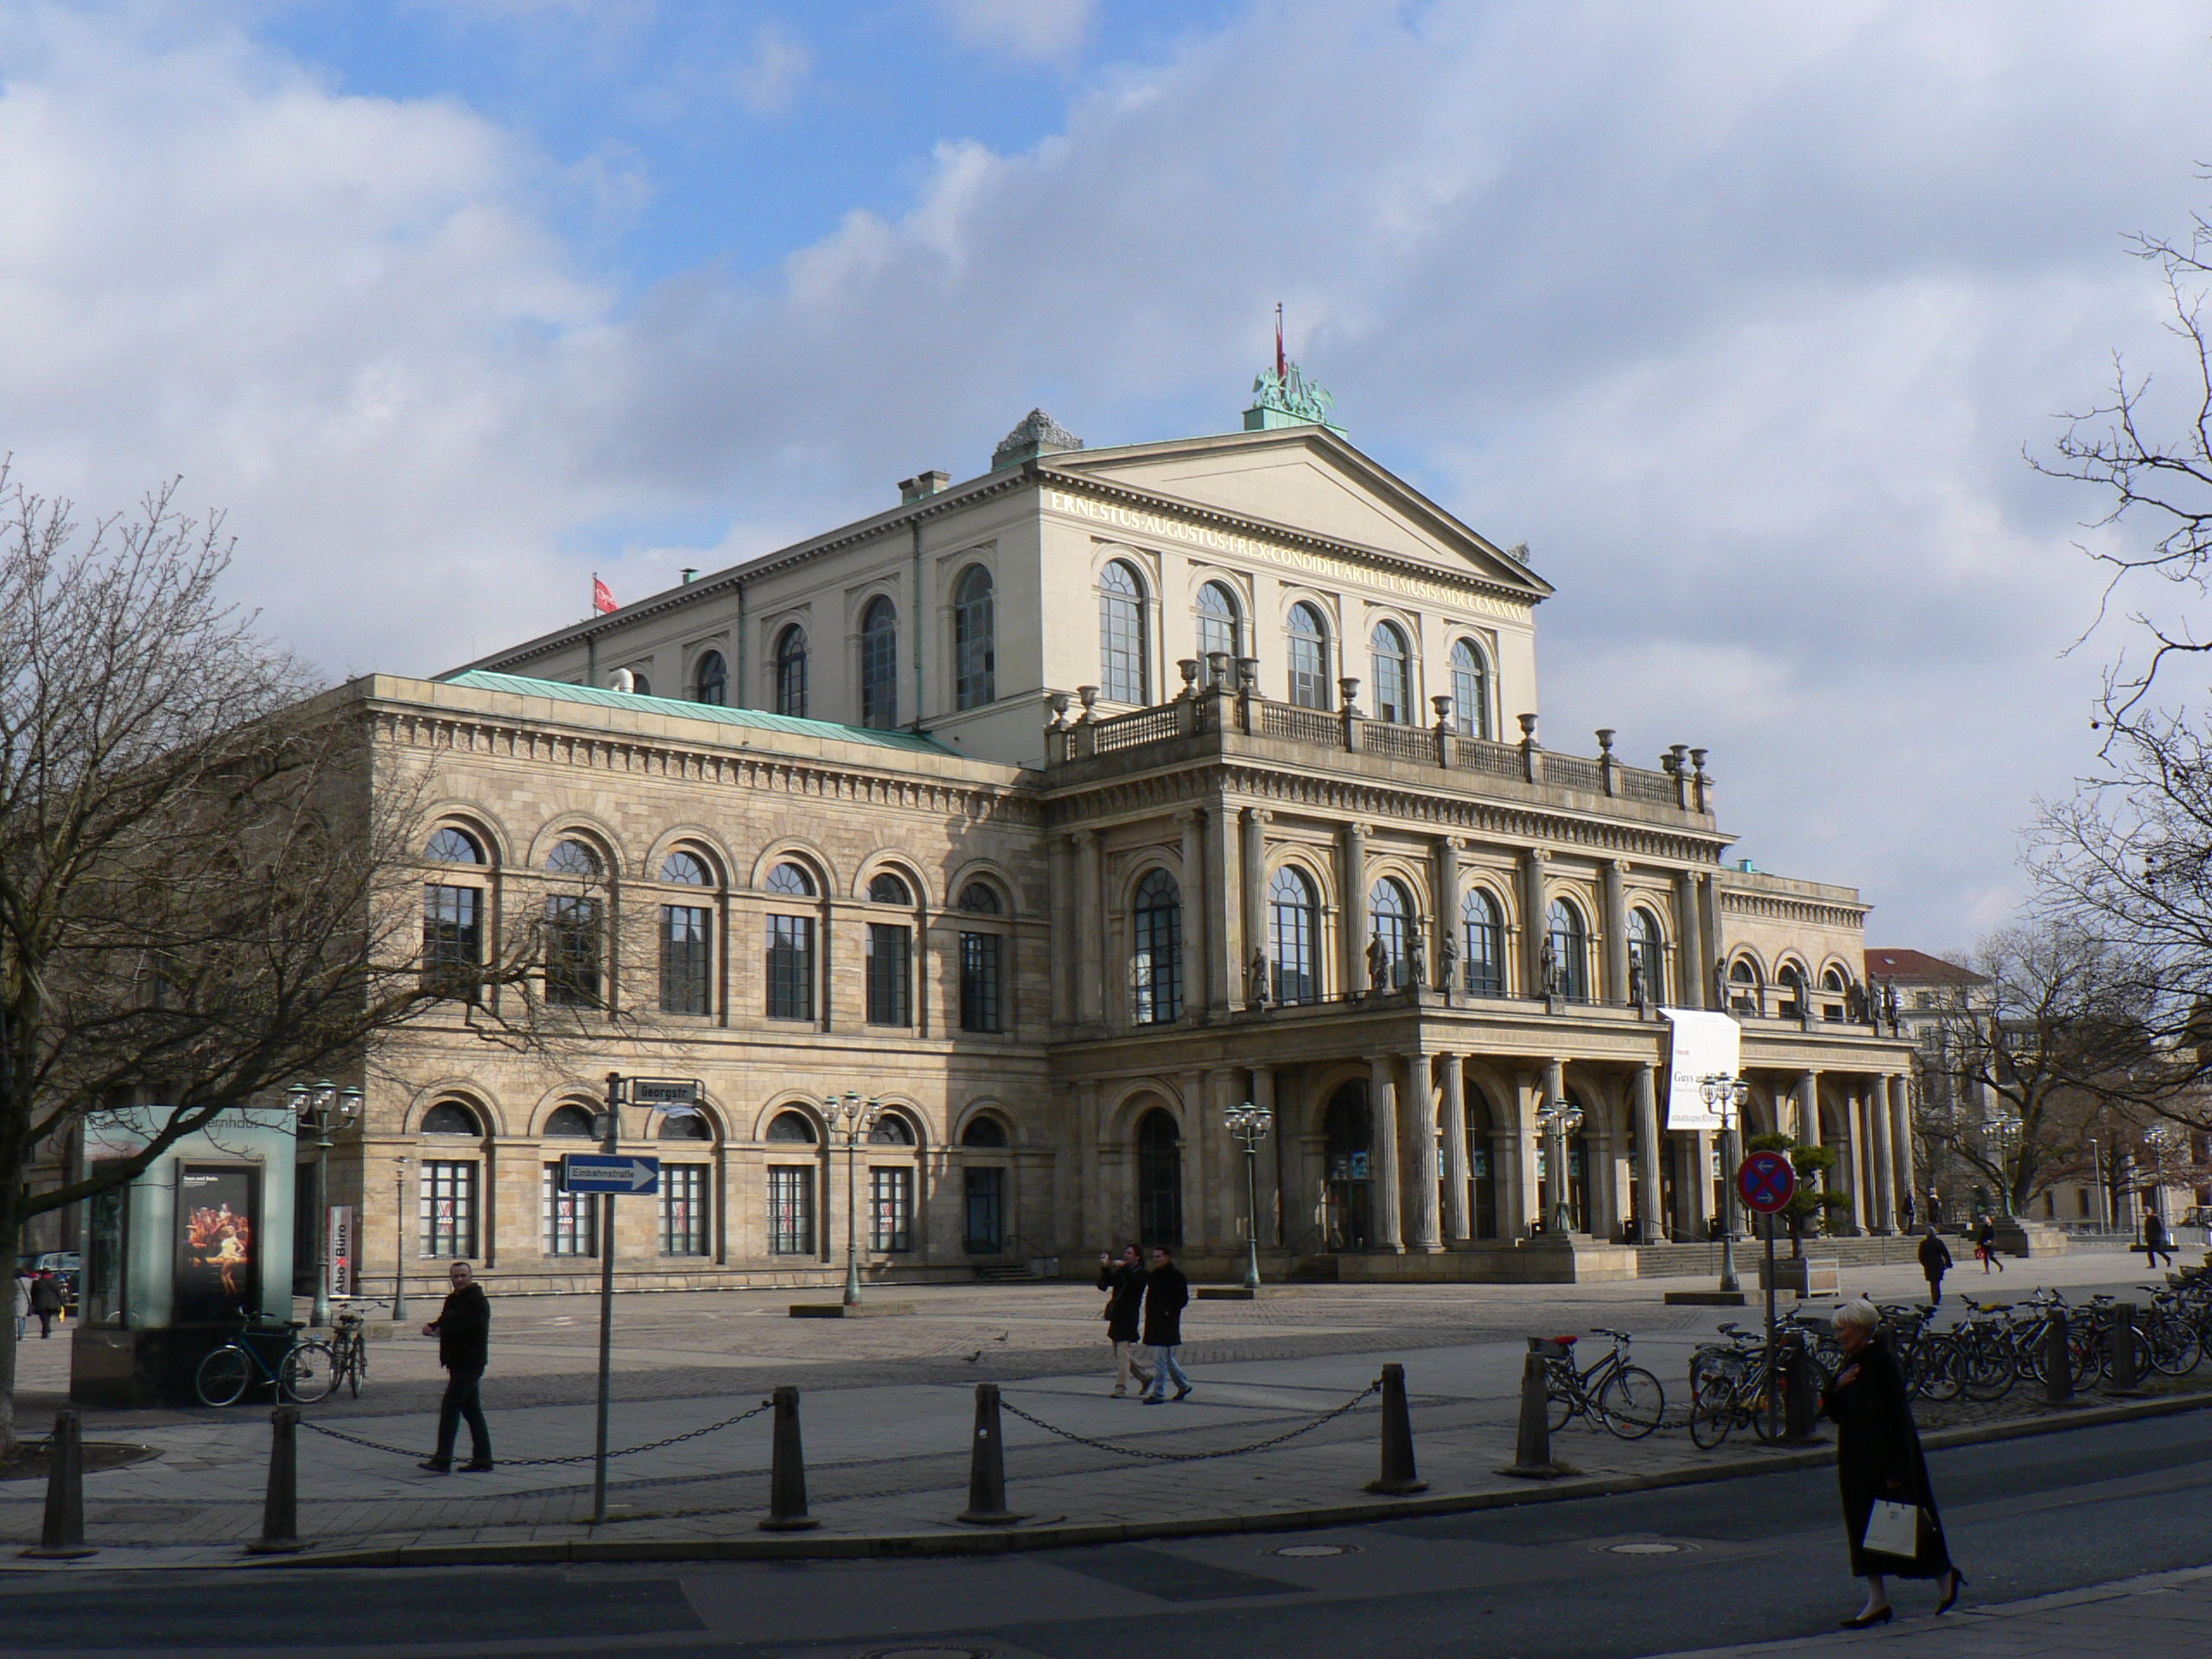 Opernhaus Hannover Von Guandalug - Eigenes Werk, CC BY-SA 3.0